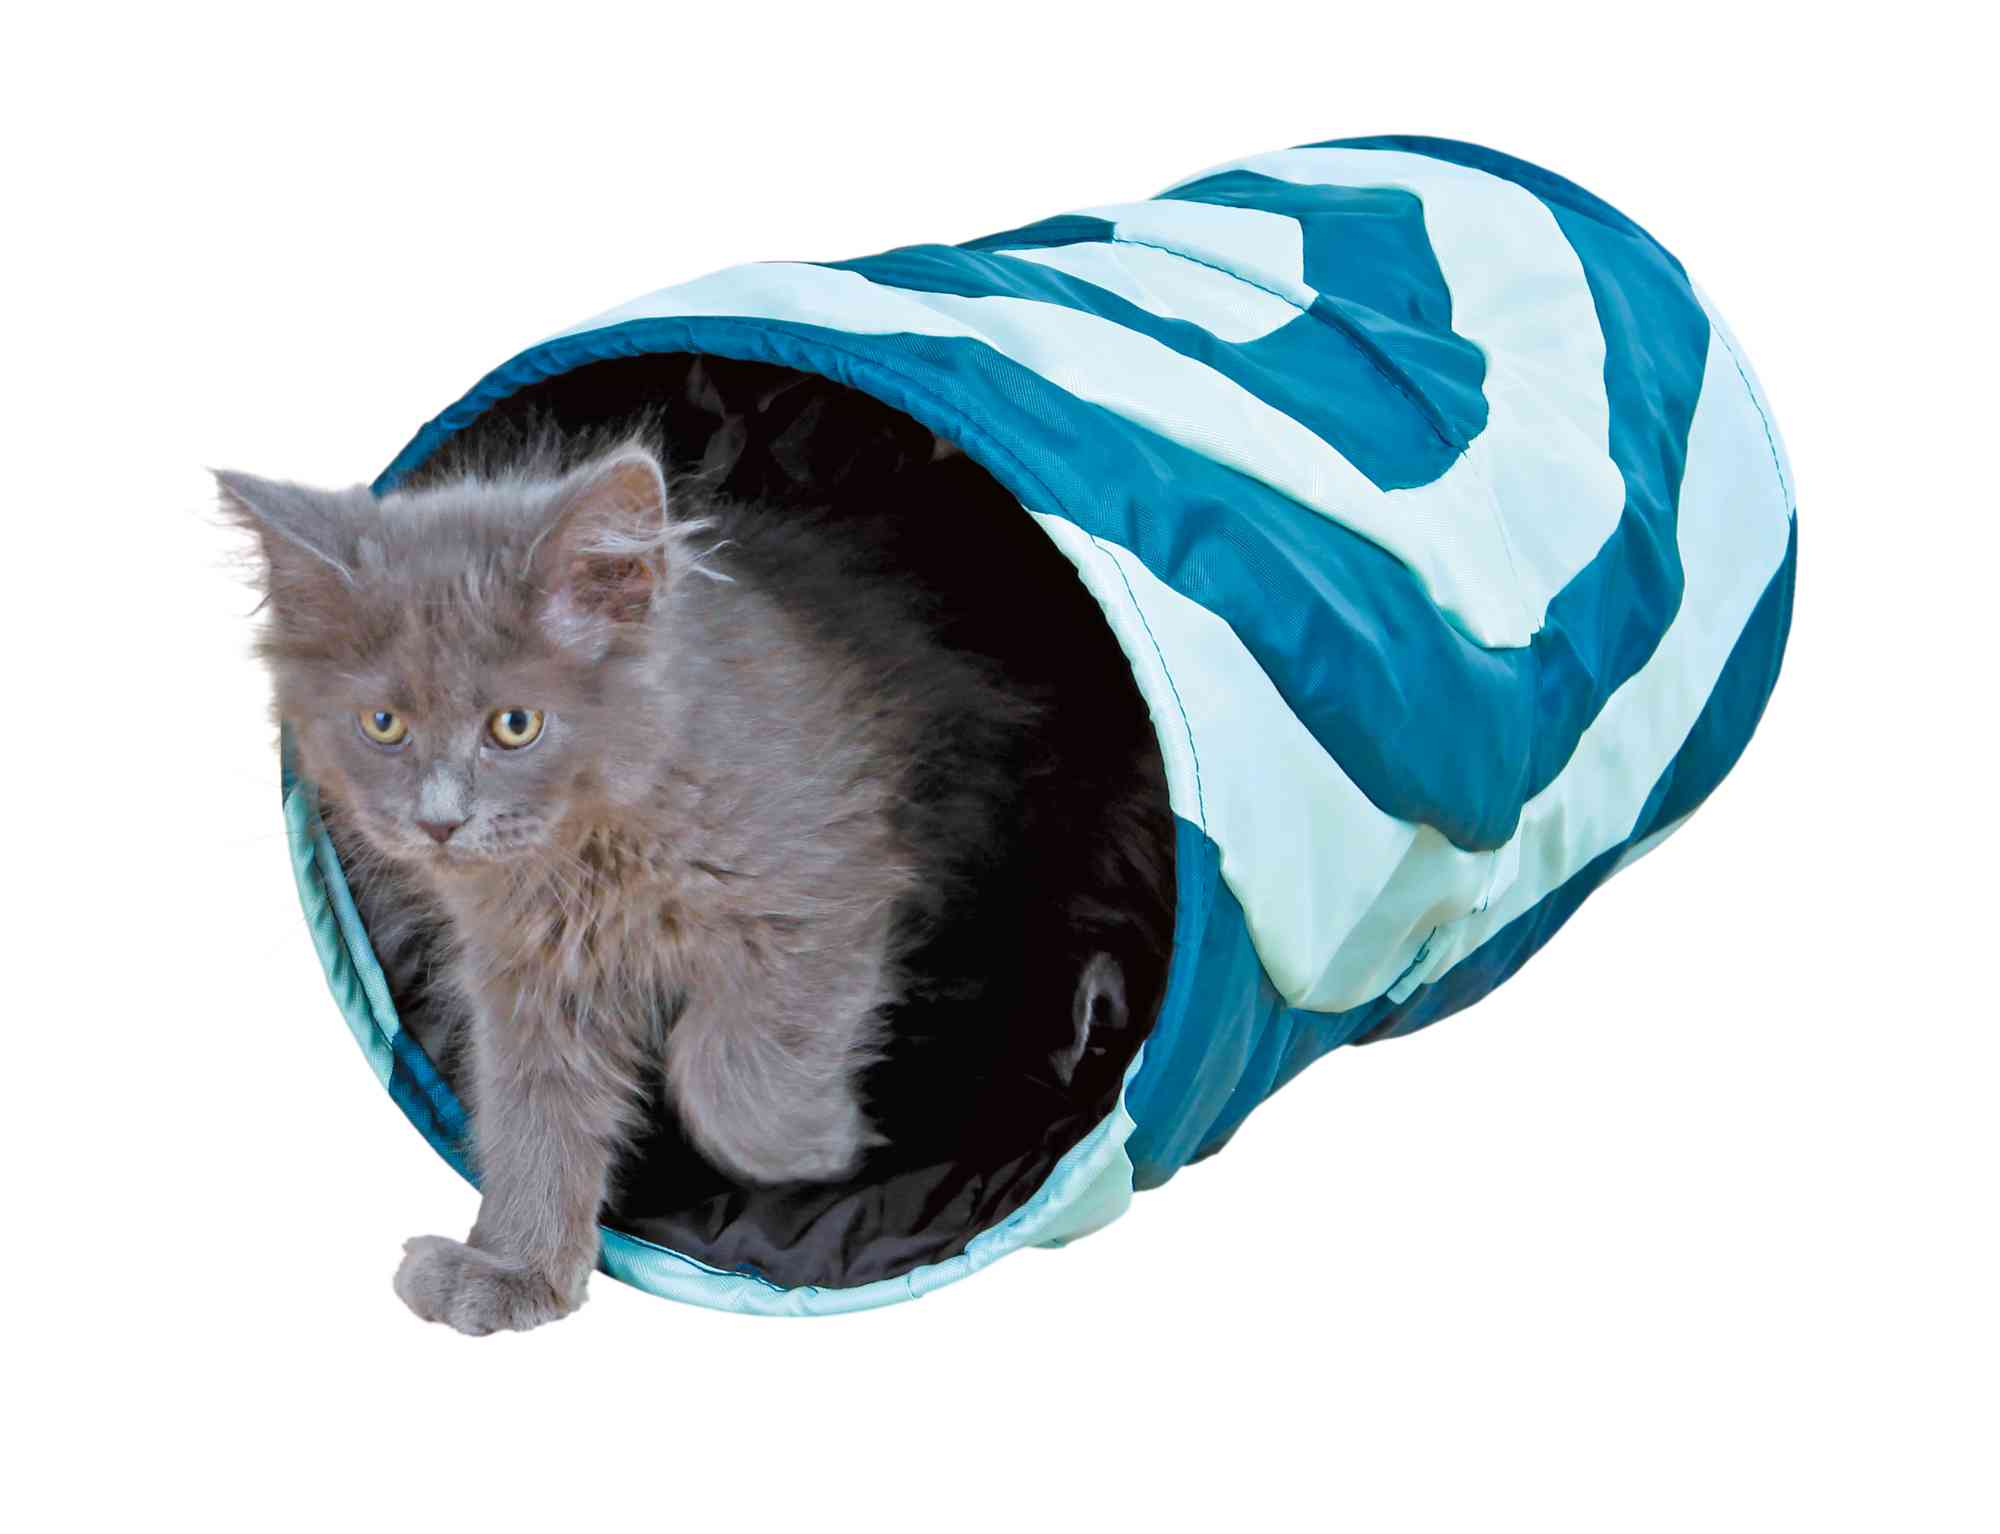 Тоннель для кошки шуршащий, 50 см, Trixie